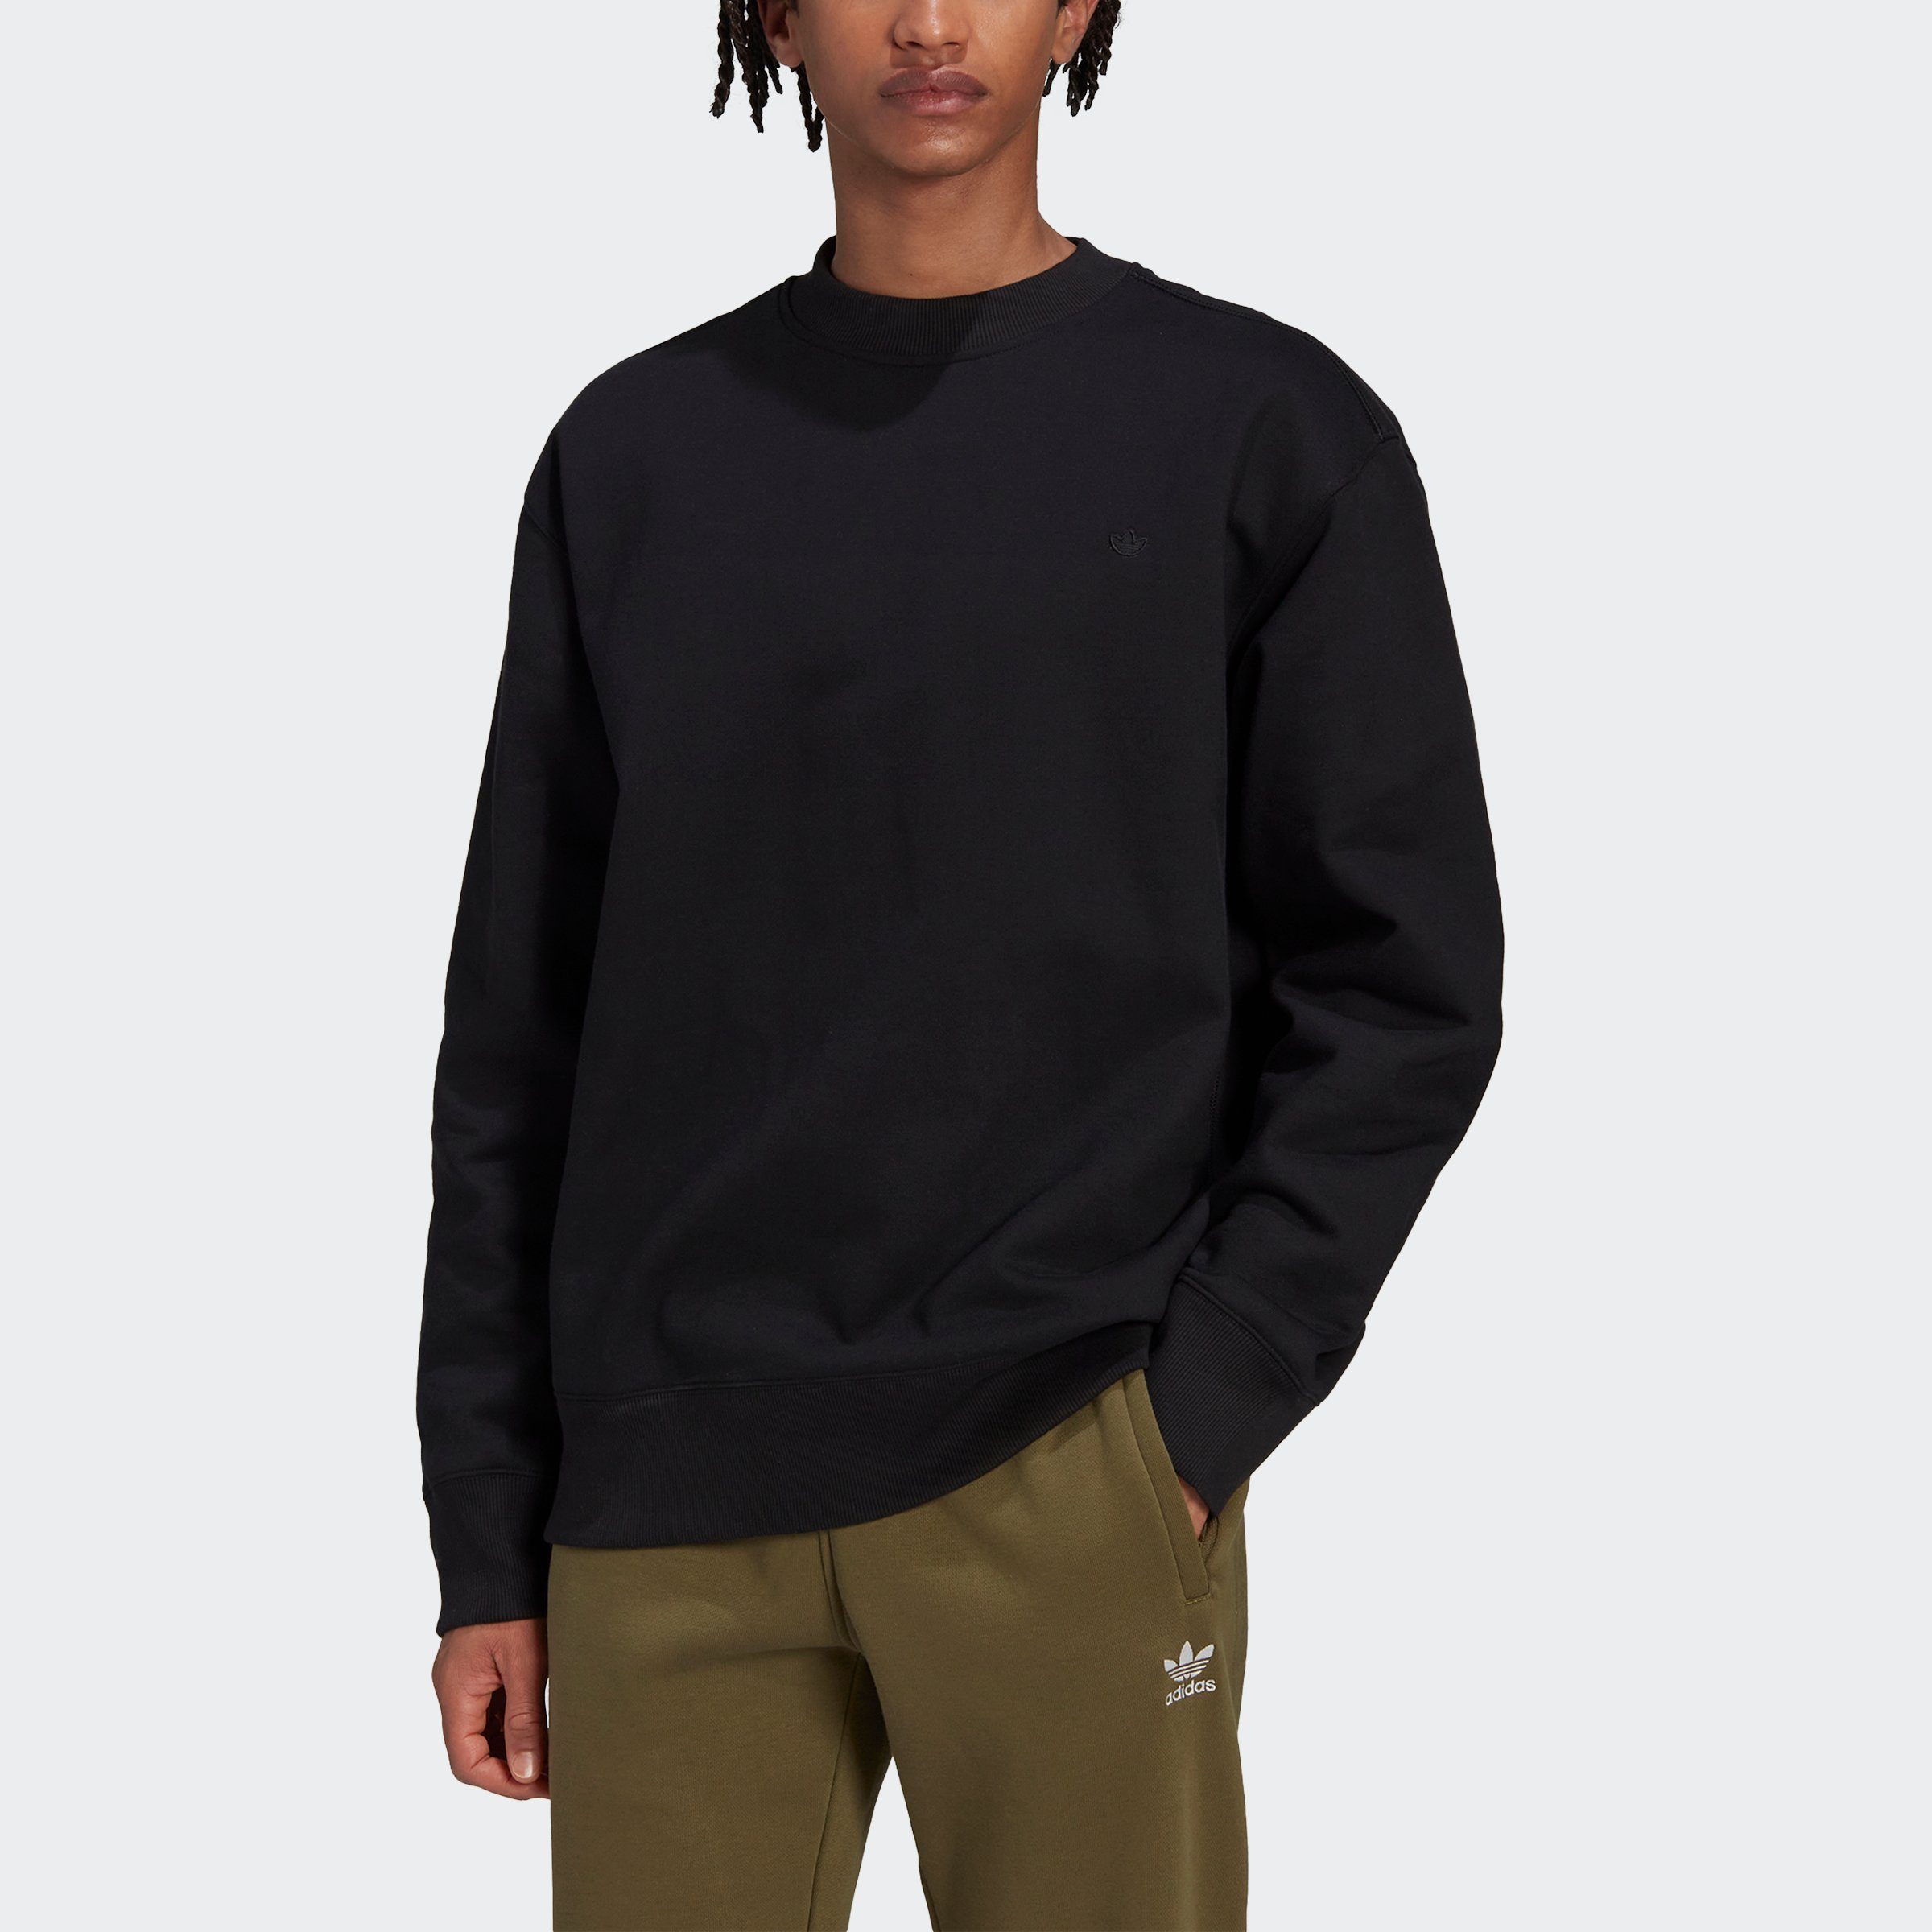 adidas Originals Sweatshirt C black Crew